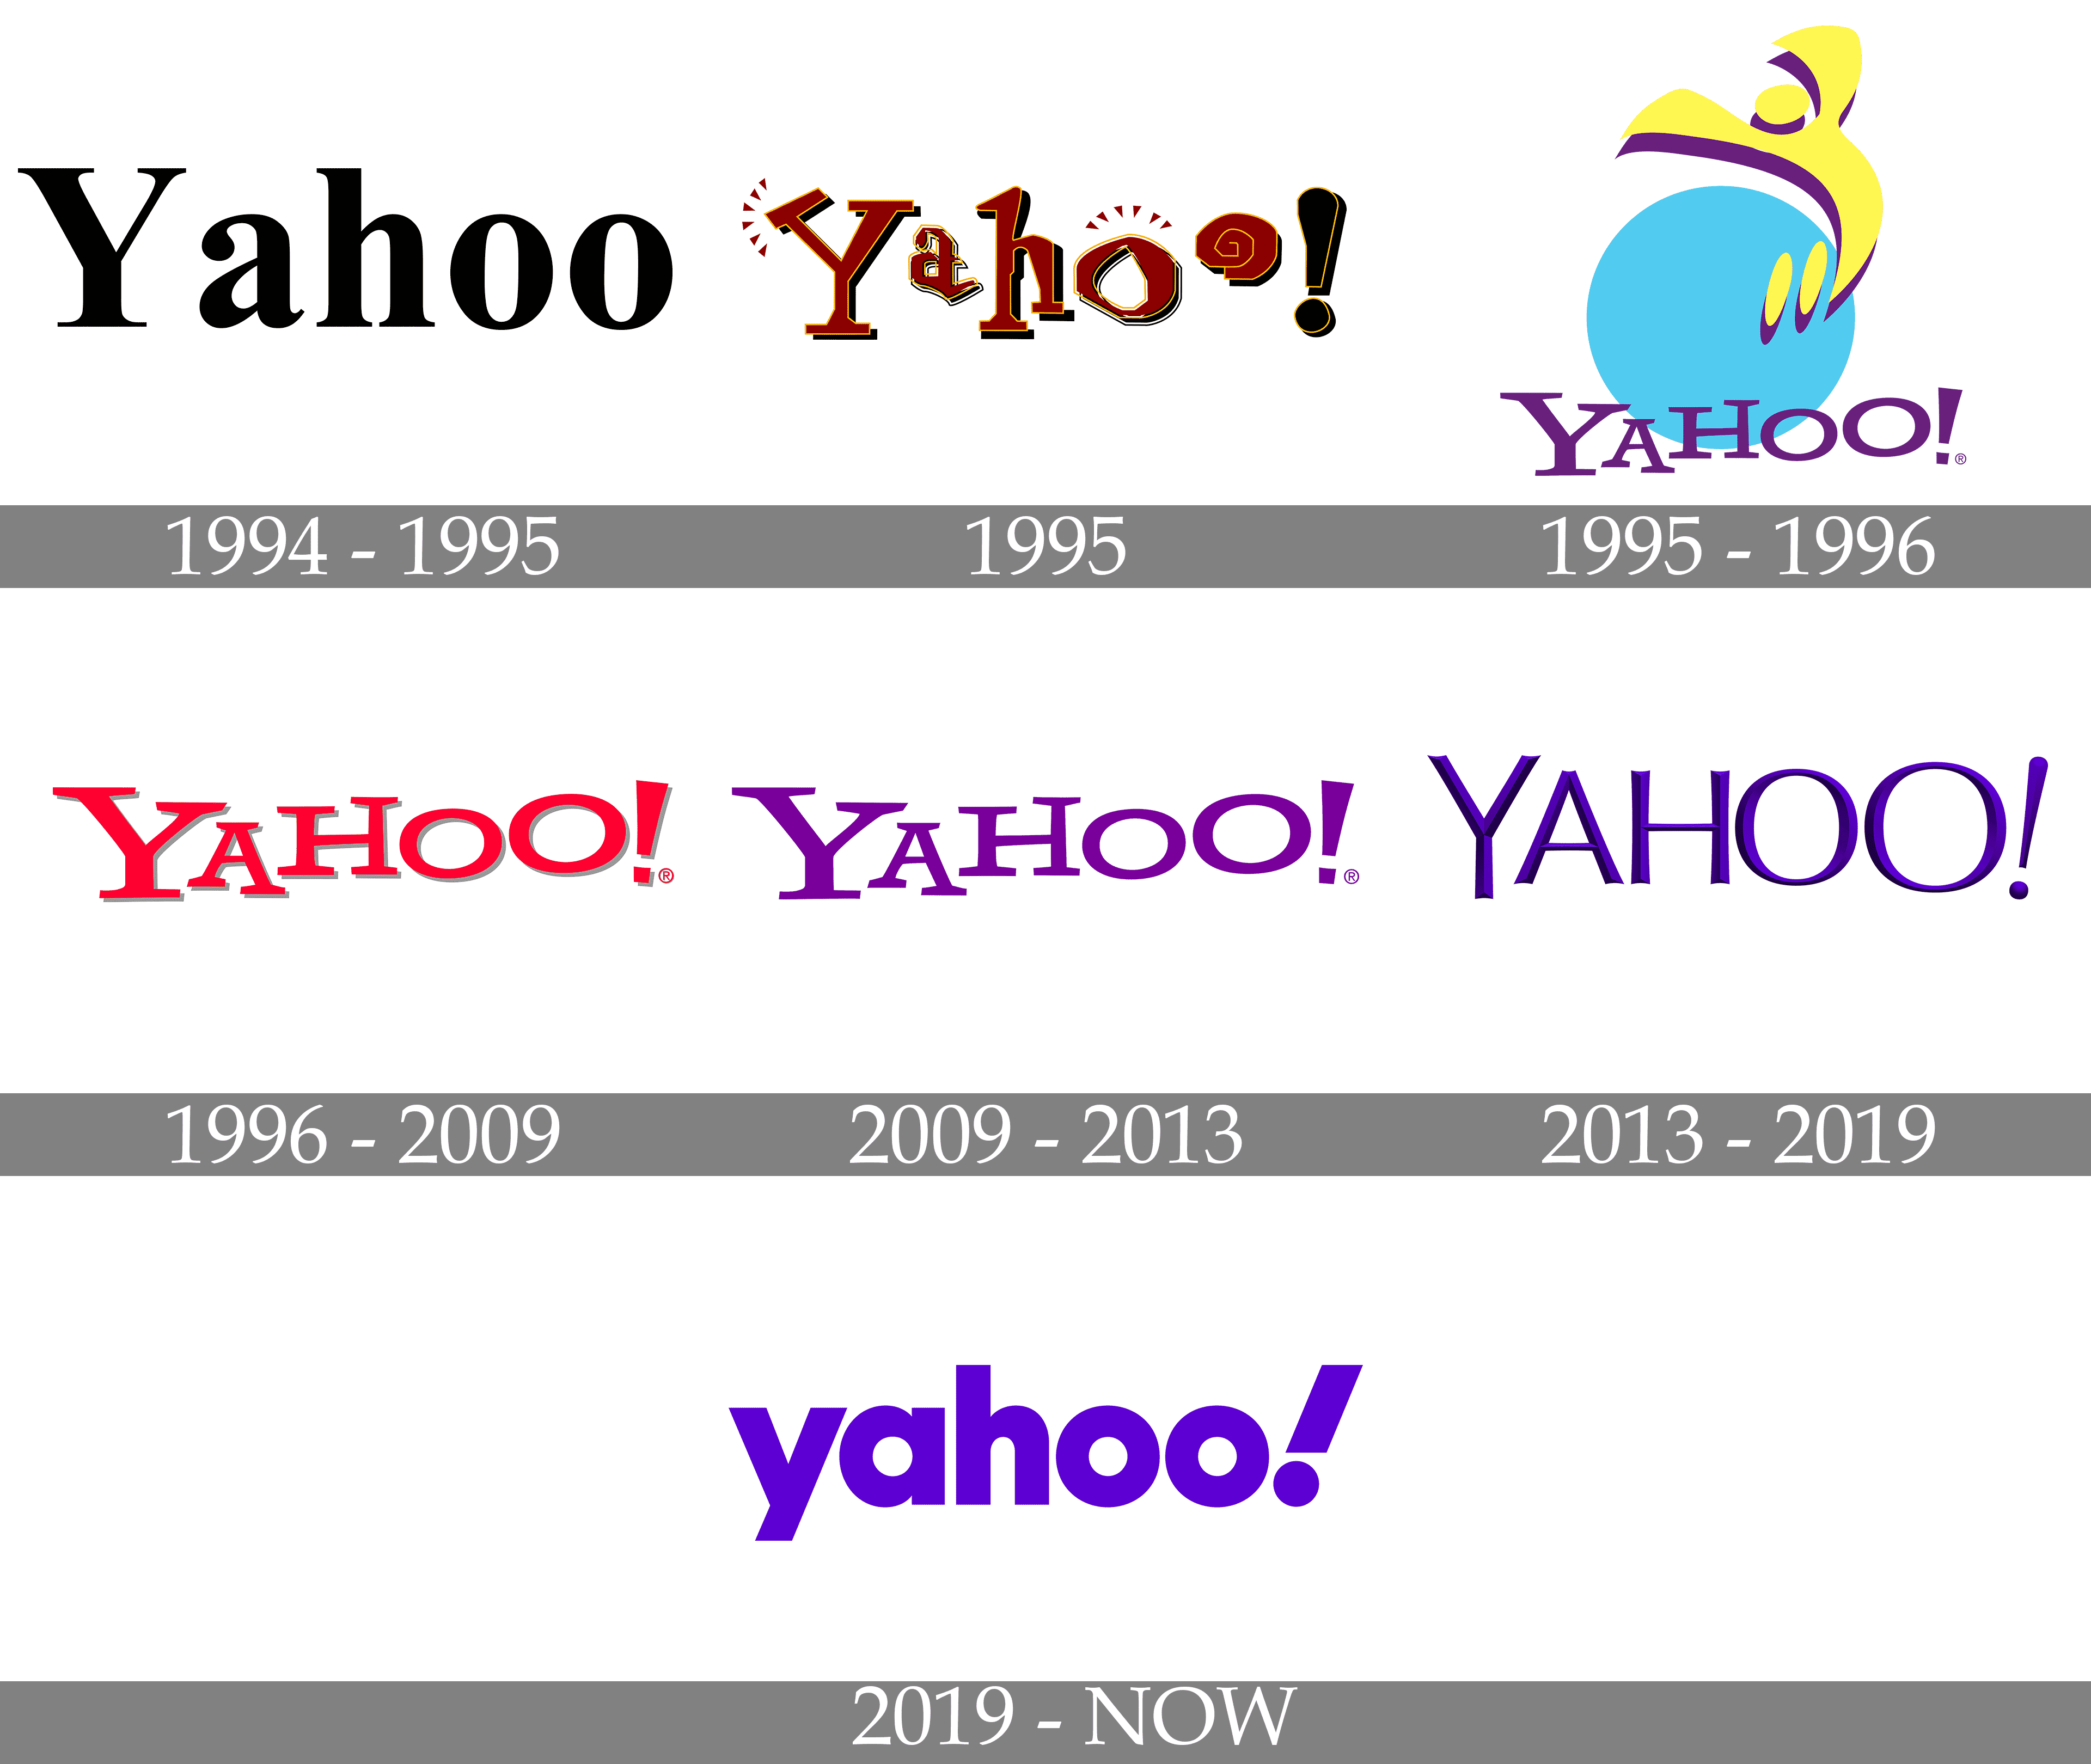 yahoo logo design